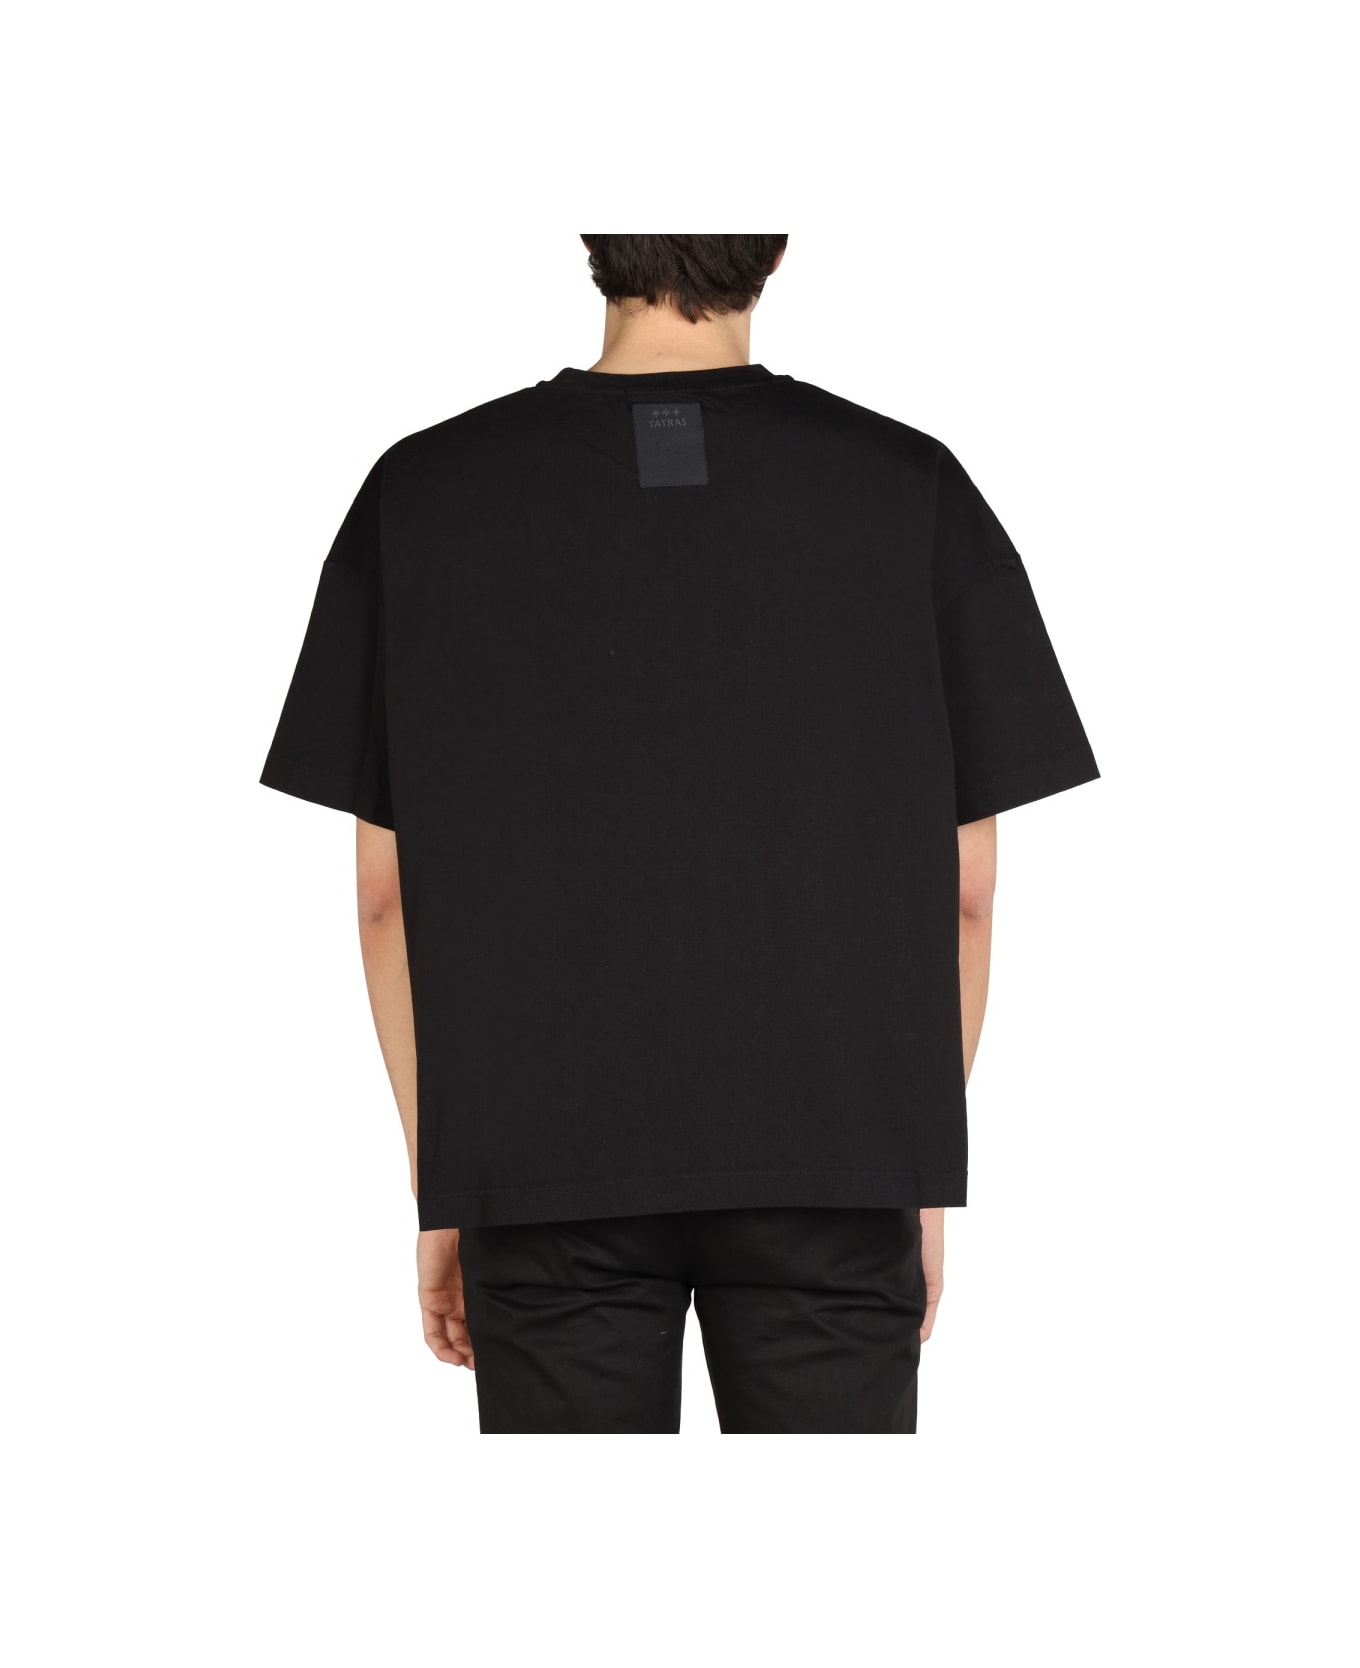 TATRAS Oversized Fit T-shirt - BLACK